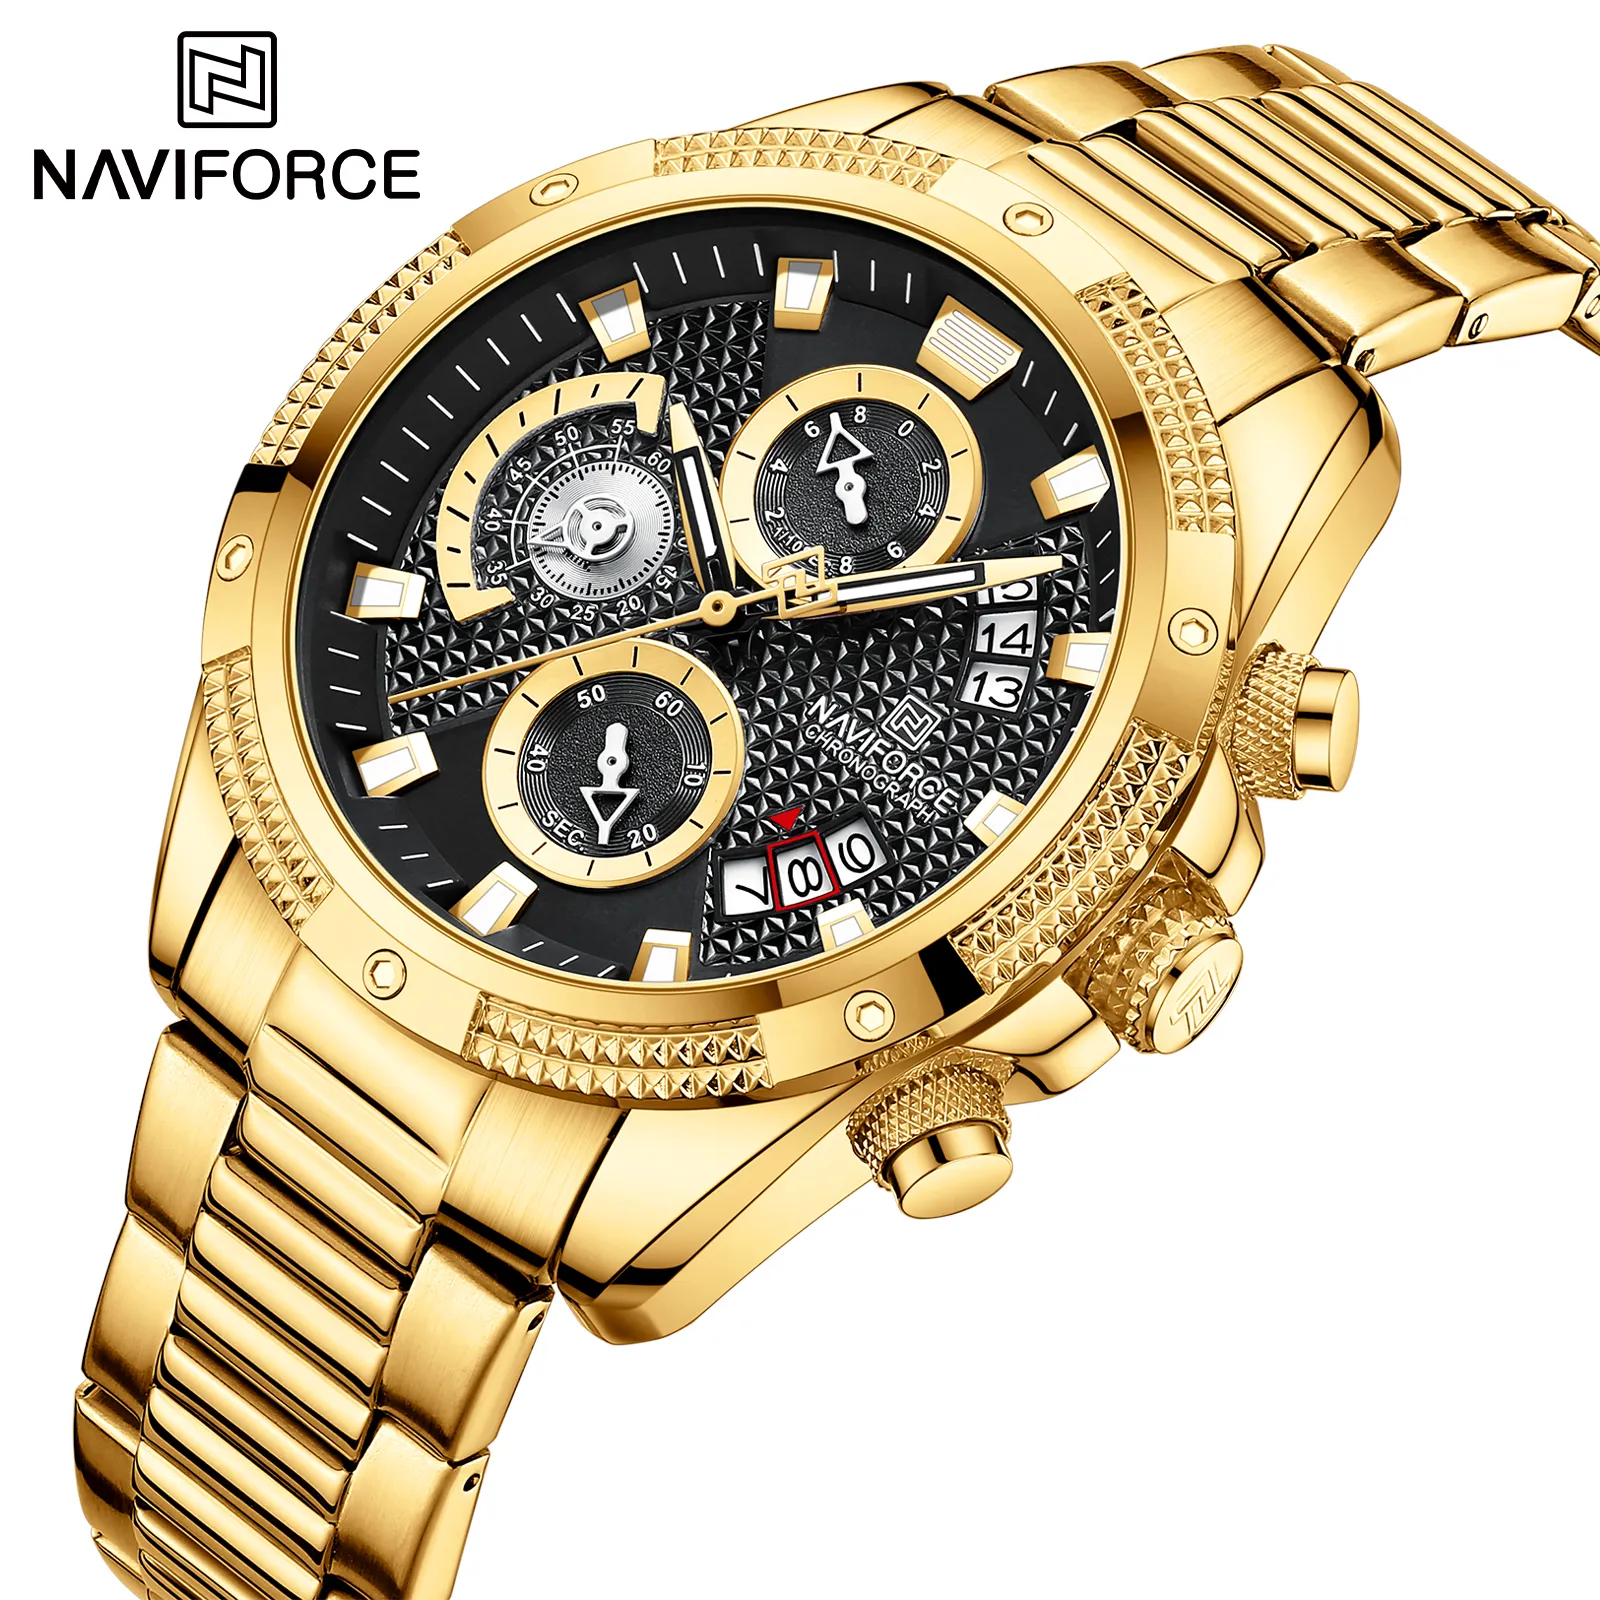 Naviforce 8021 Gg Quartz Chronograaf Horloge Roestvrij Staal Luxe Horloges Waterdicht Elektronische Digitale Klok Horloge